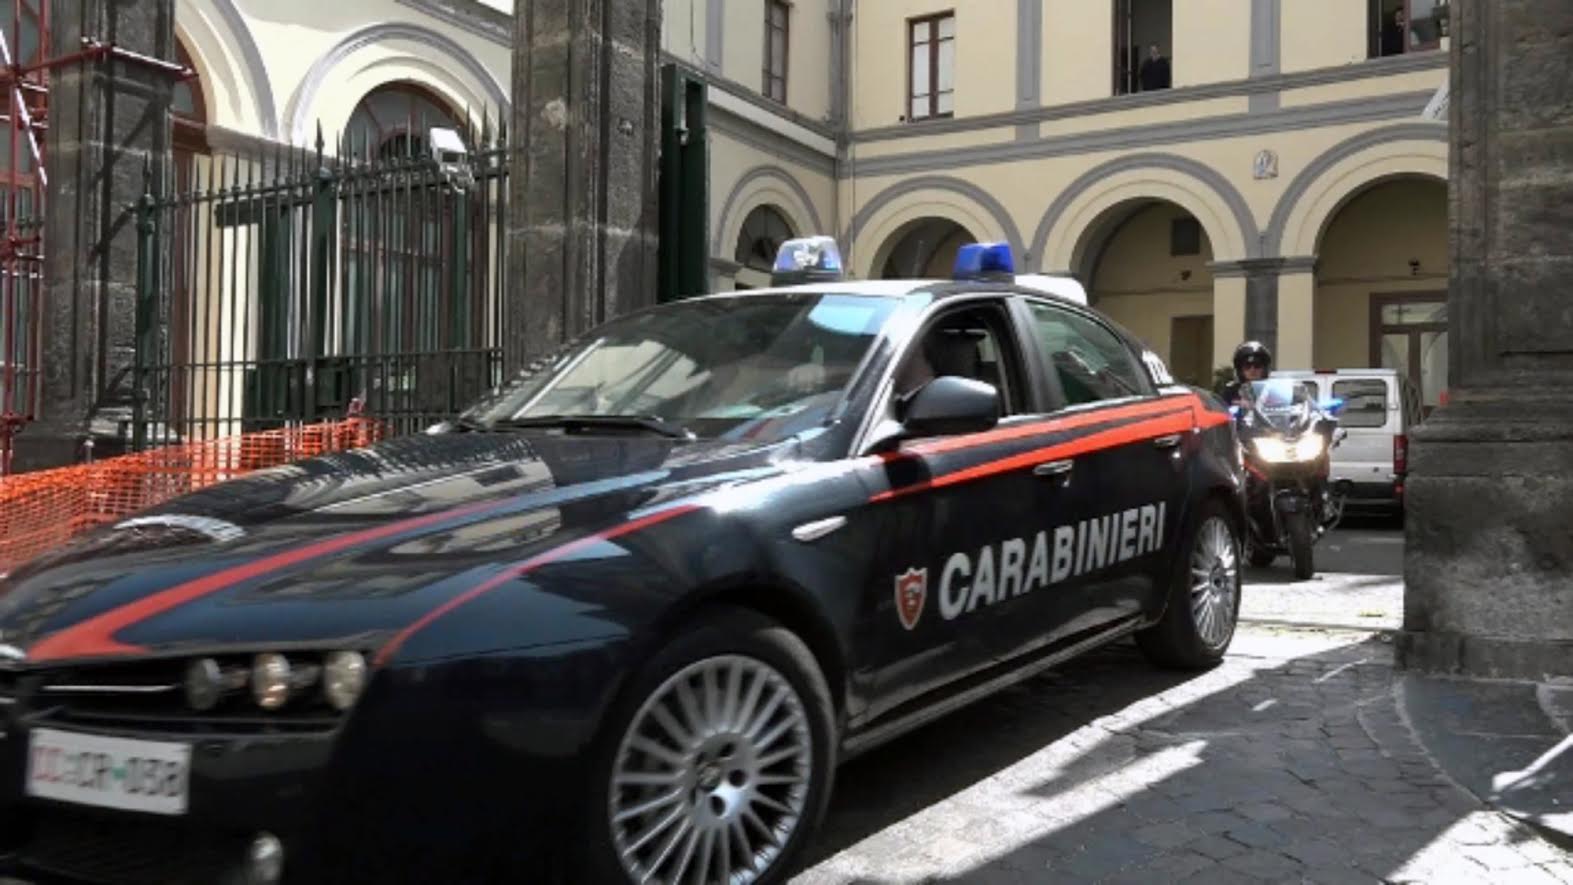 Arrestato nell’operazione anticamorra a Rimini, evade dai domiciliari per andare dal barbiere e al bar: arrestato napoletano